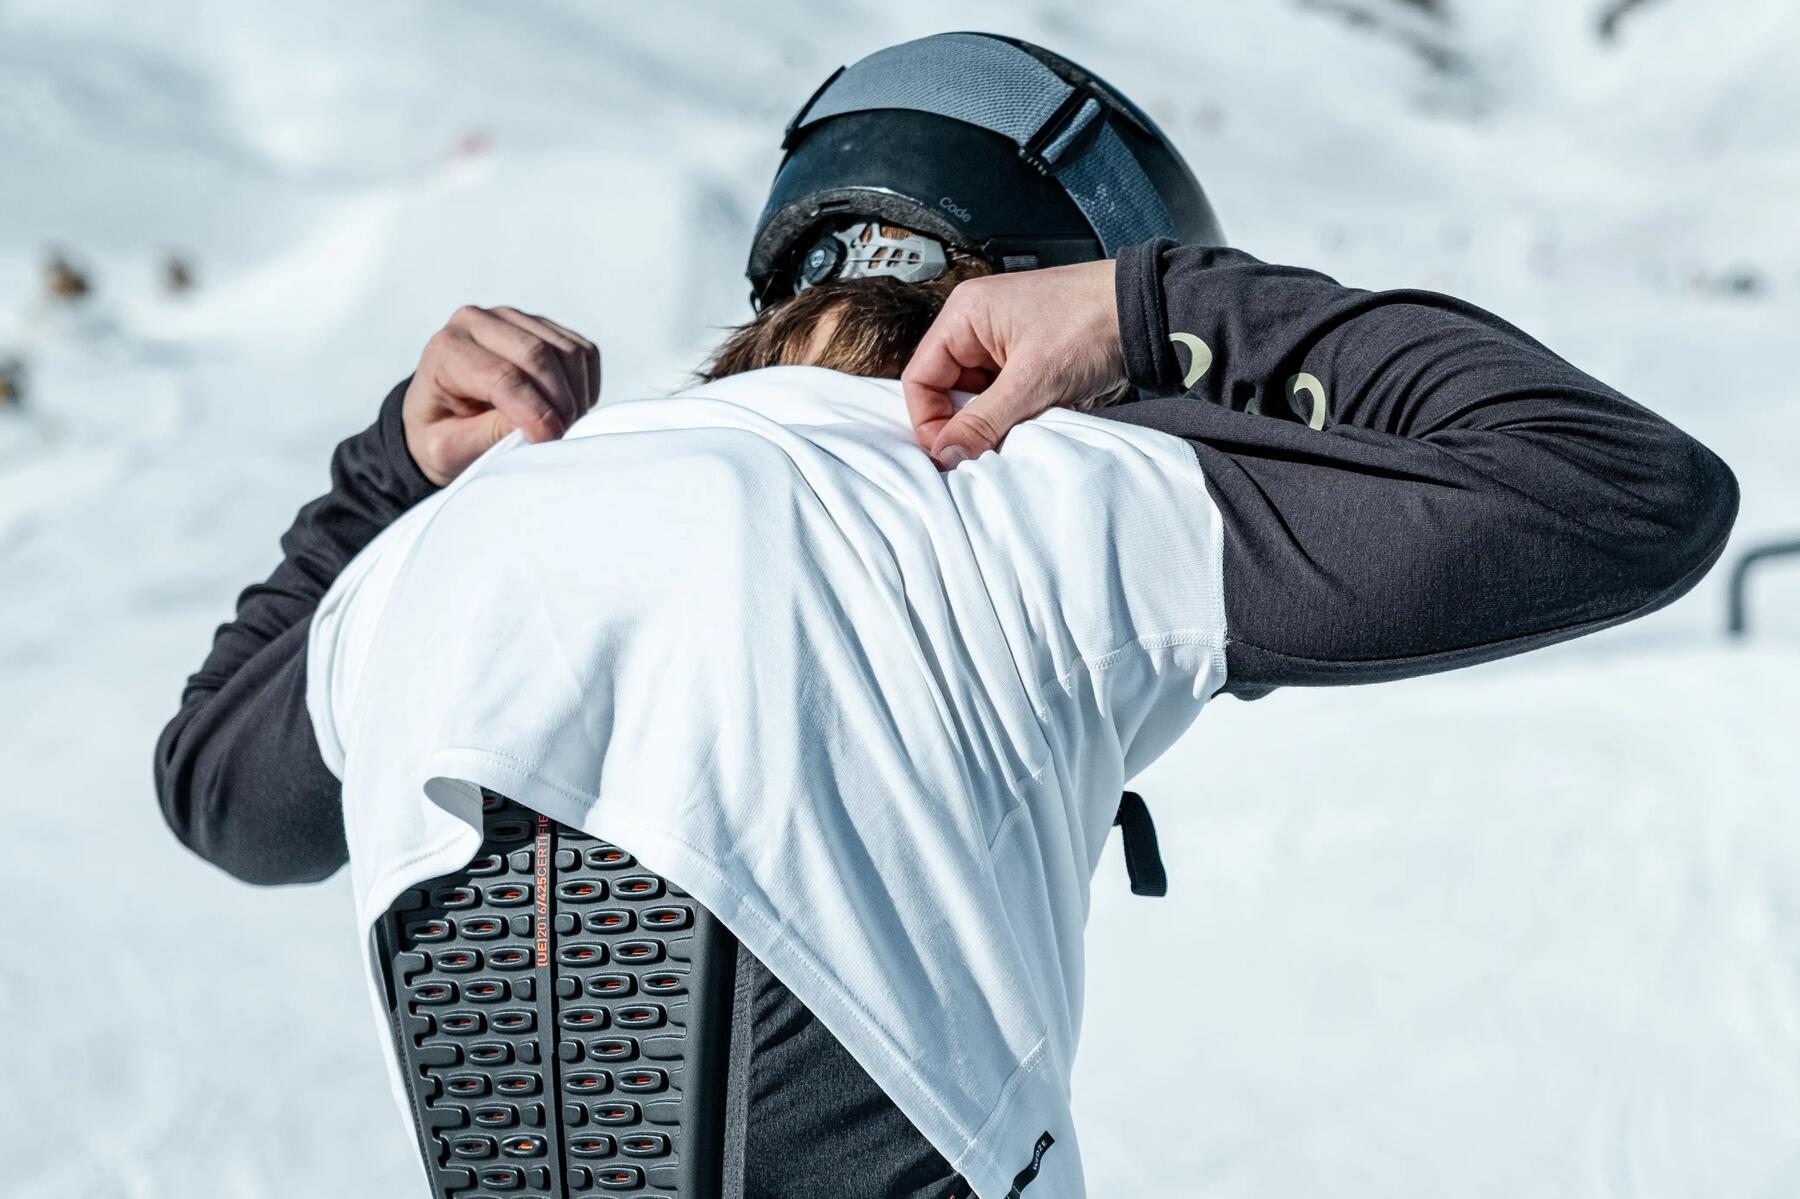 Waarom bescherming dragen tijdens wintersport?